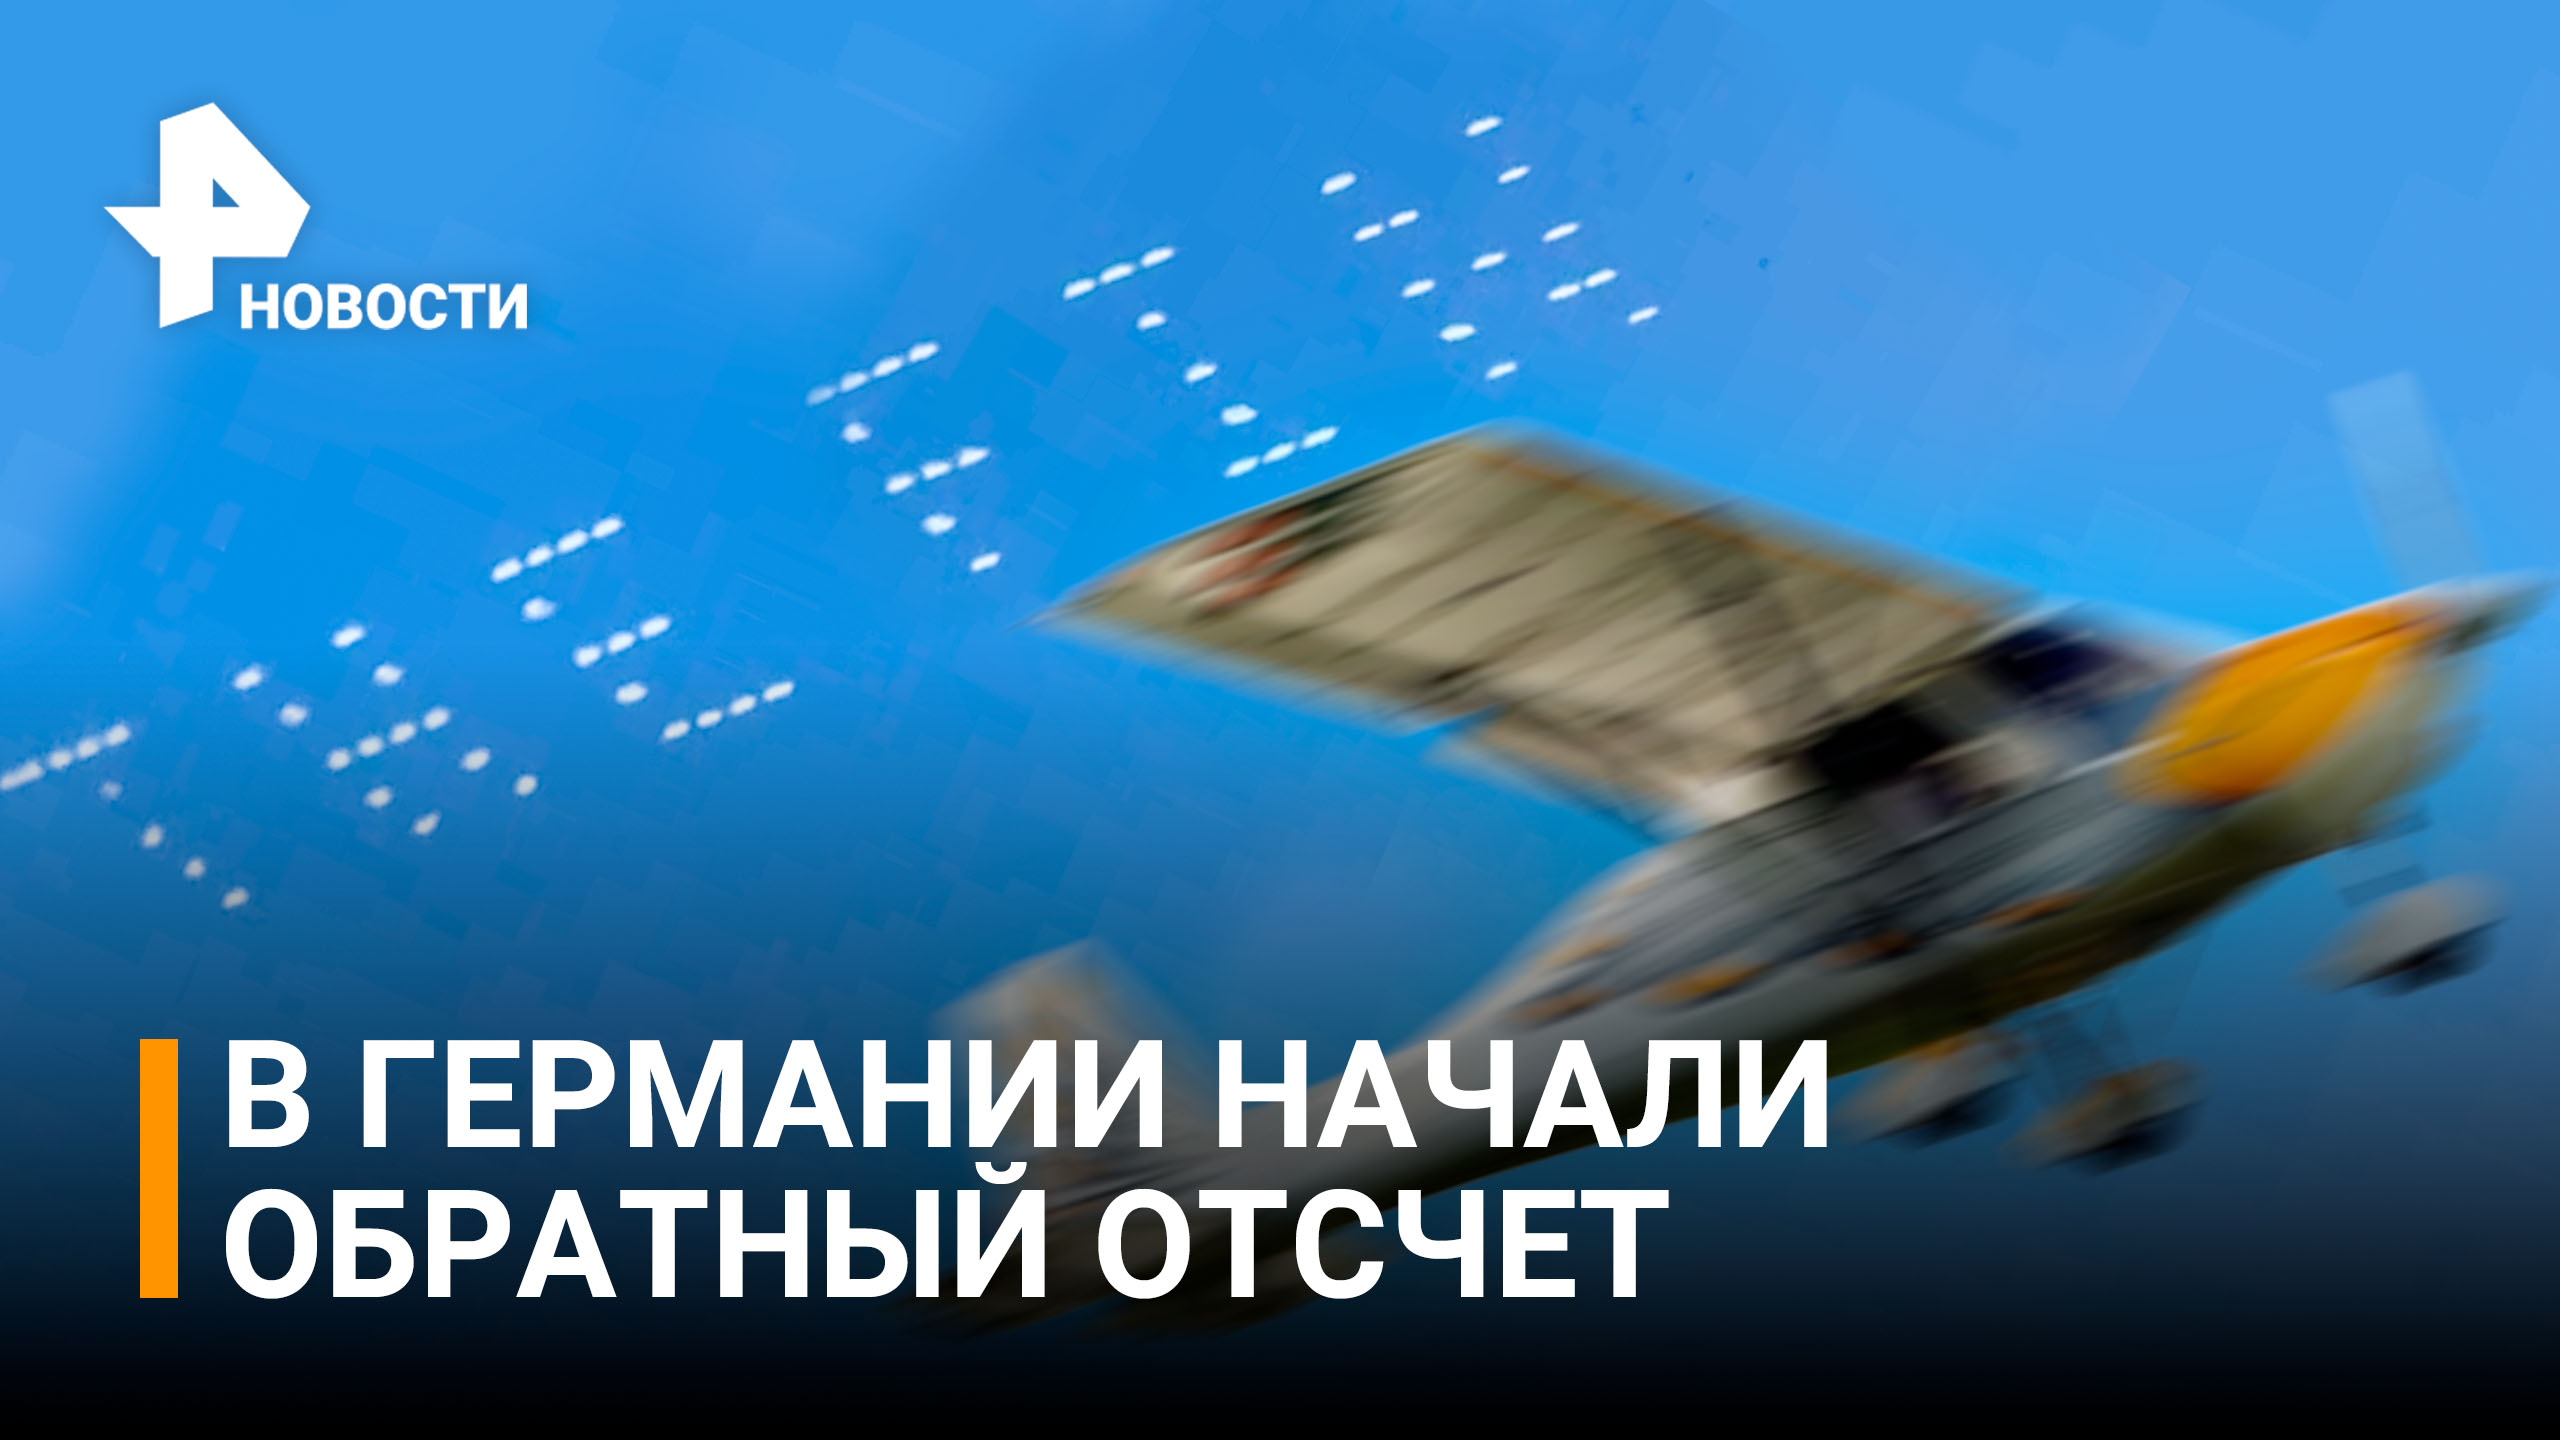 Обратный отсчет: пугающая надпись в небе над Германией / РЕН Новости